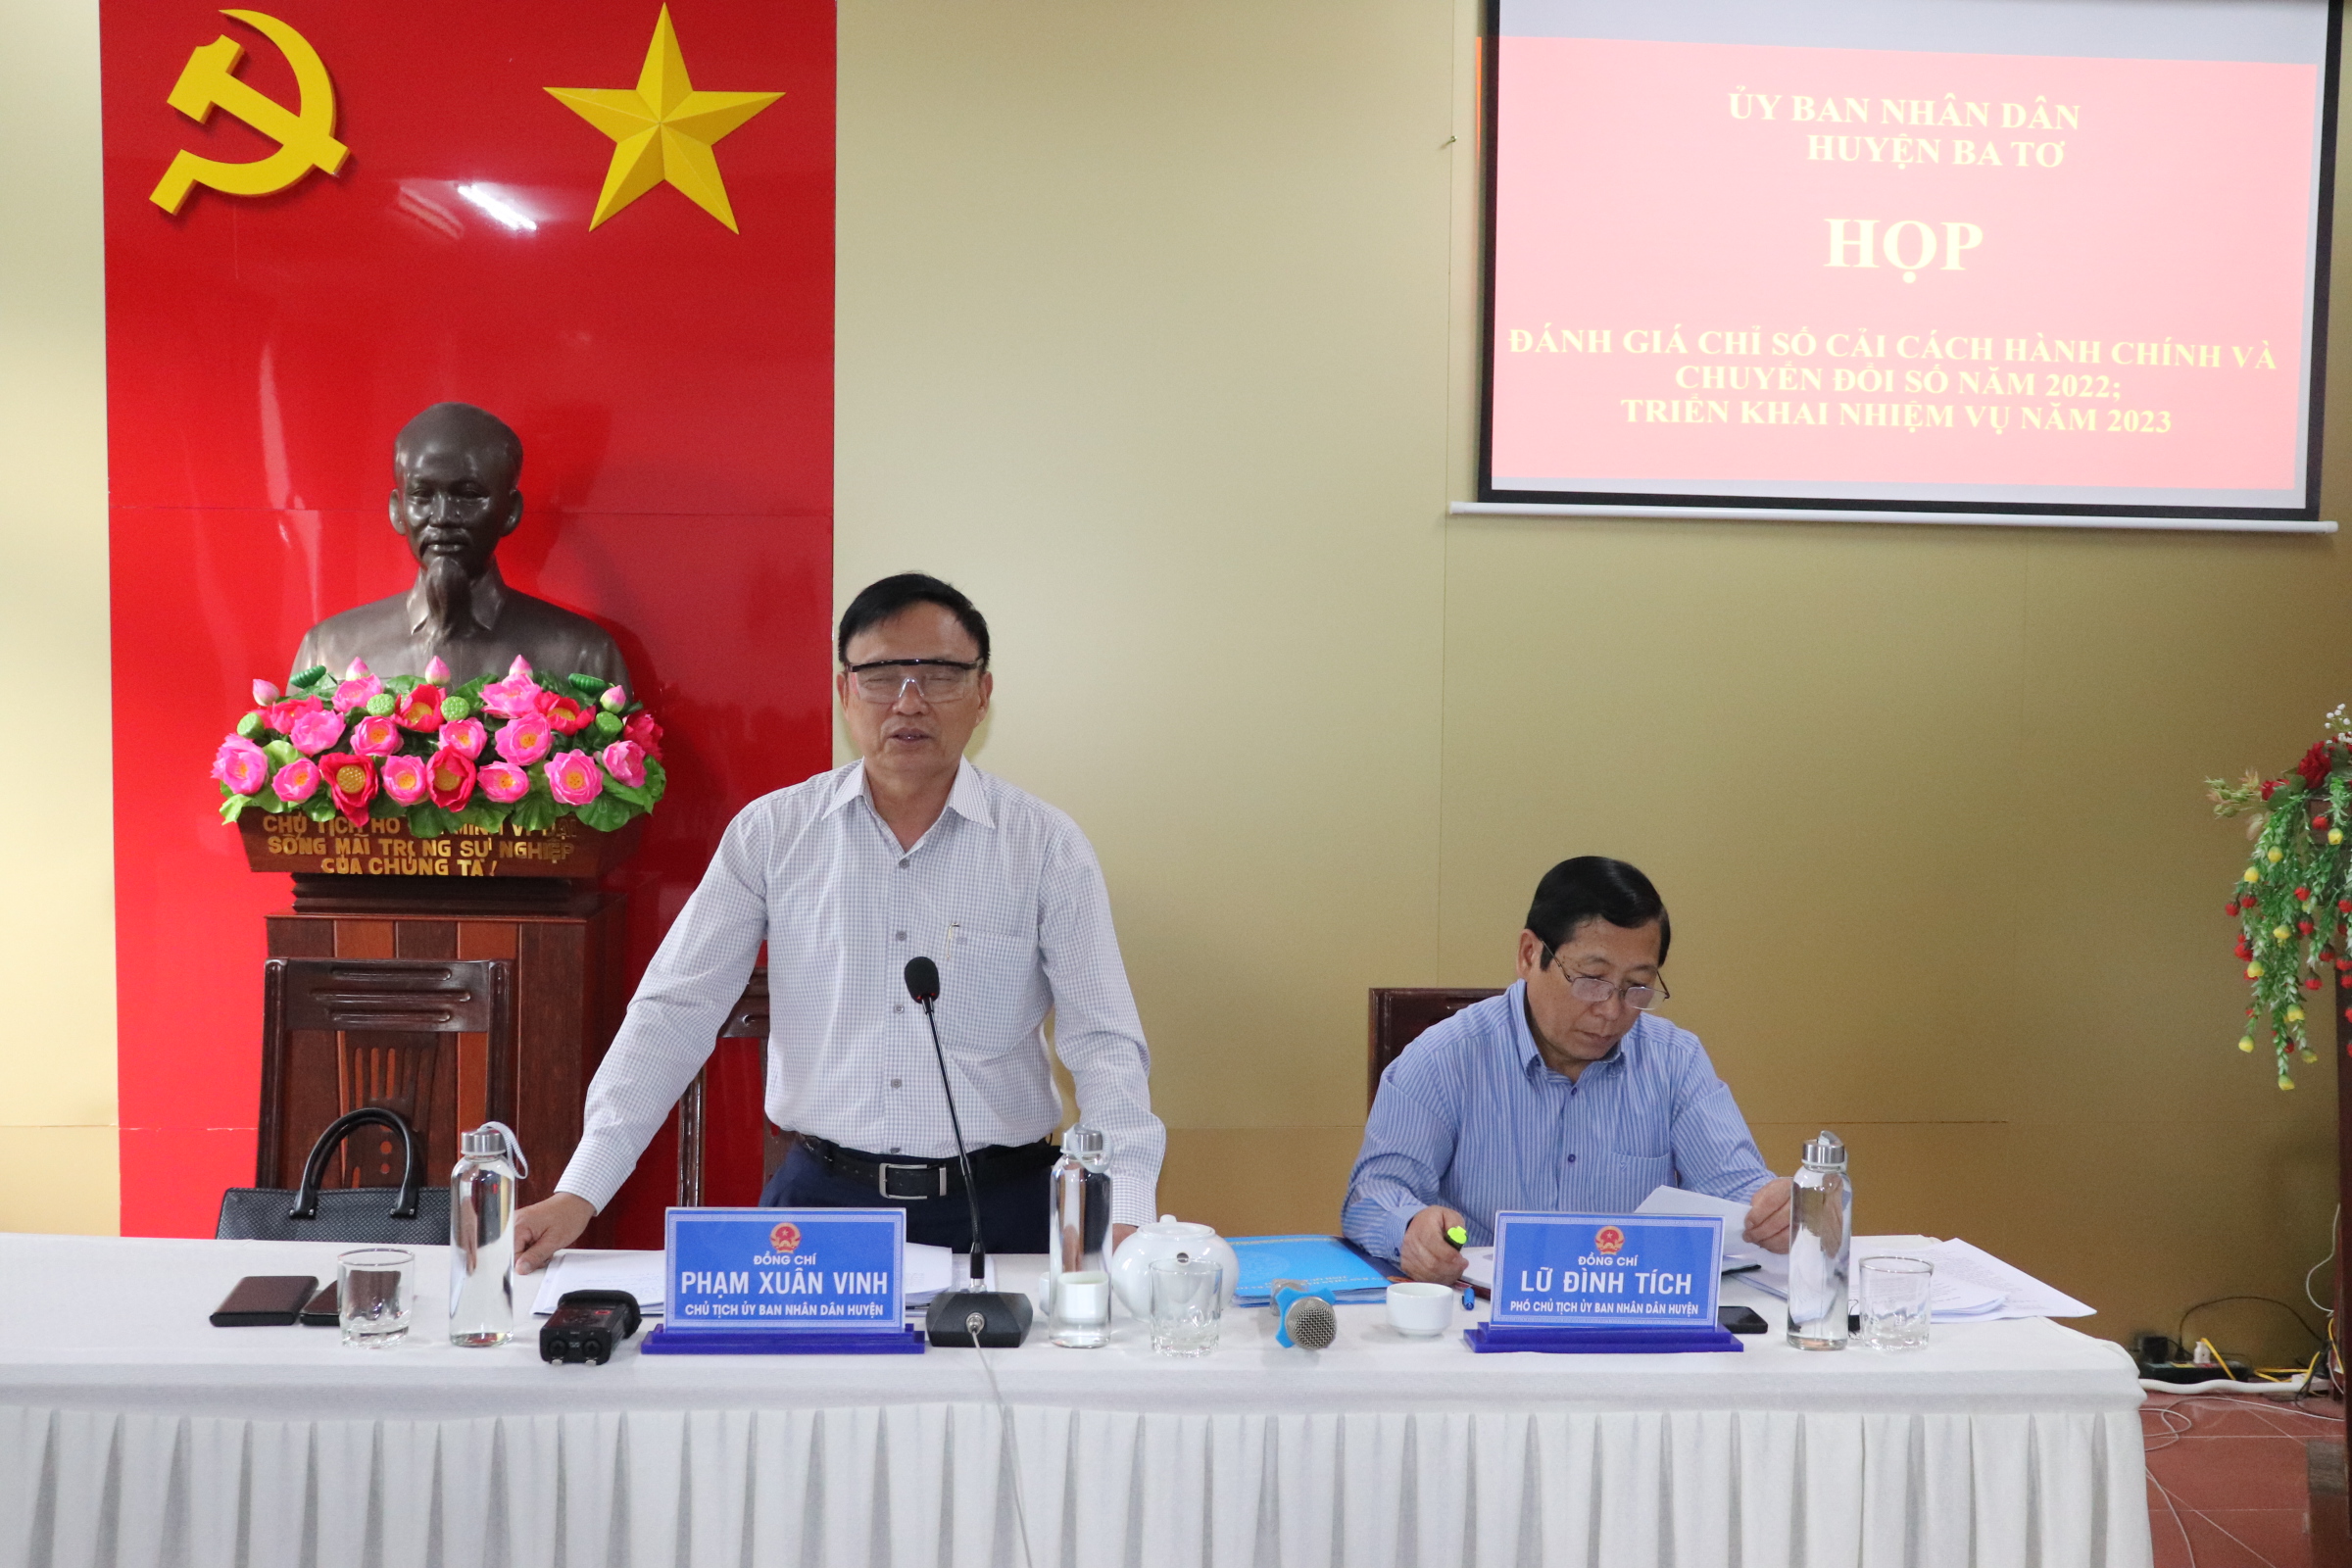 Đồng chí Phạm Xuân Vinh – Chủ tịch UBND huyện phát biểu chỉ đạo tại cuộc họp